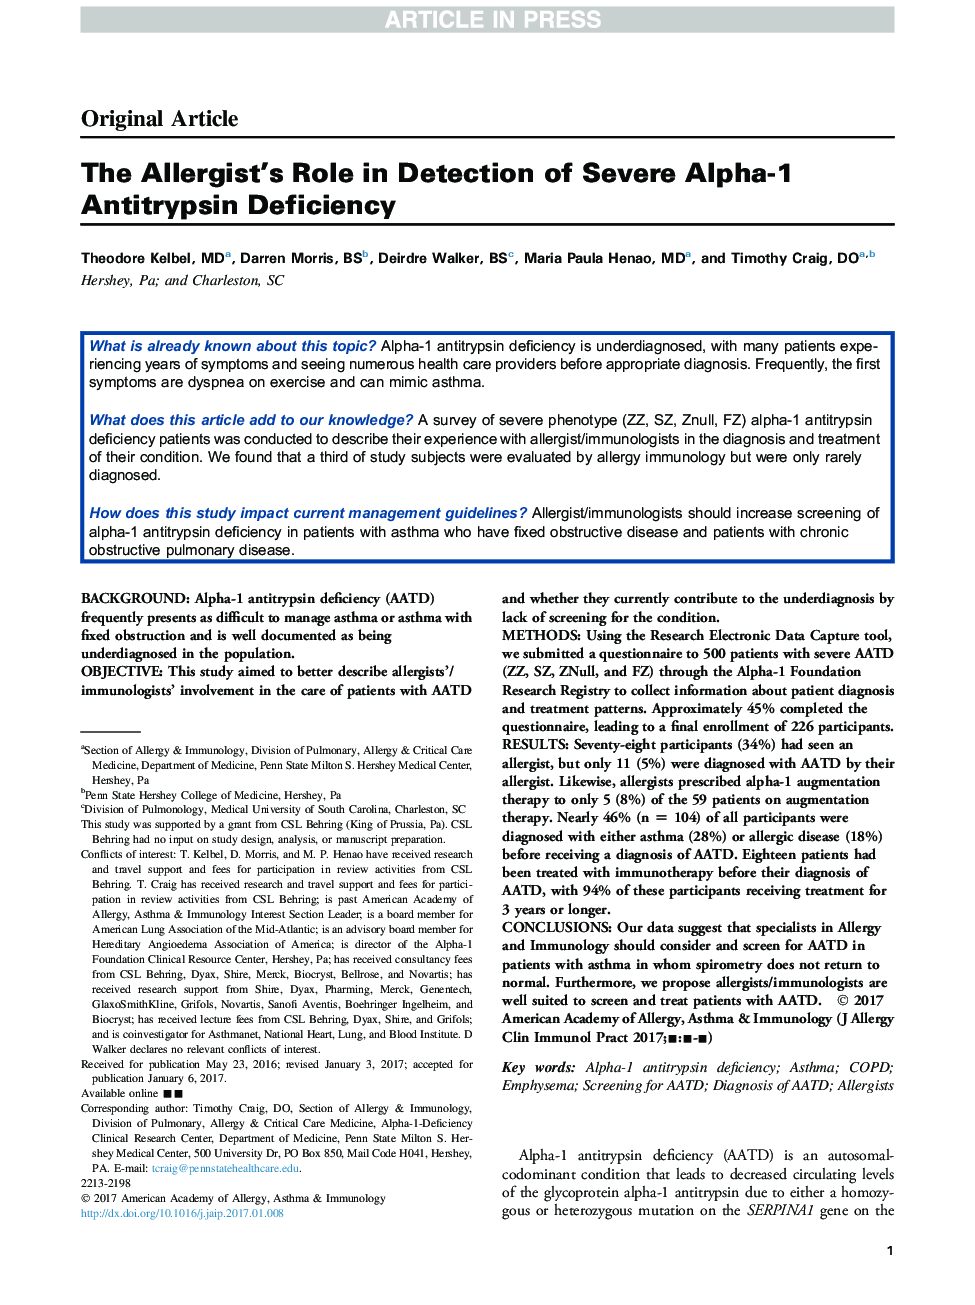 نقش آلرژی در تشخیص کمبود آنتی تریپسین آلفا 1 شدید 